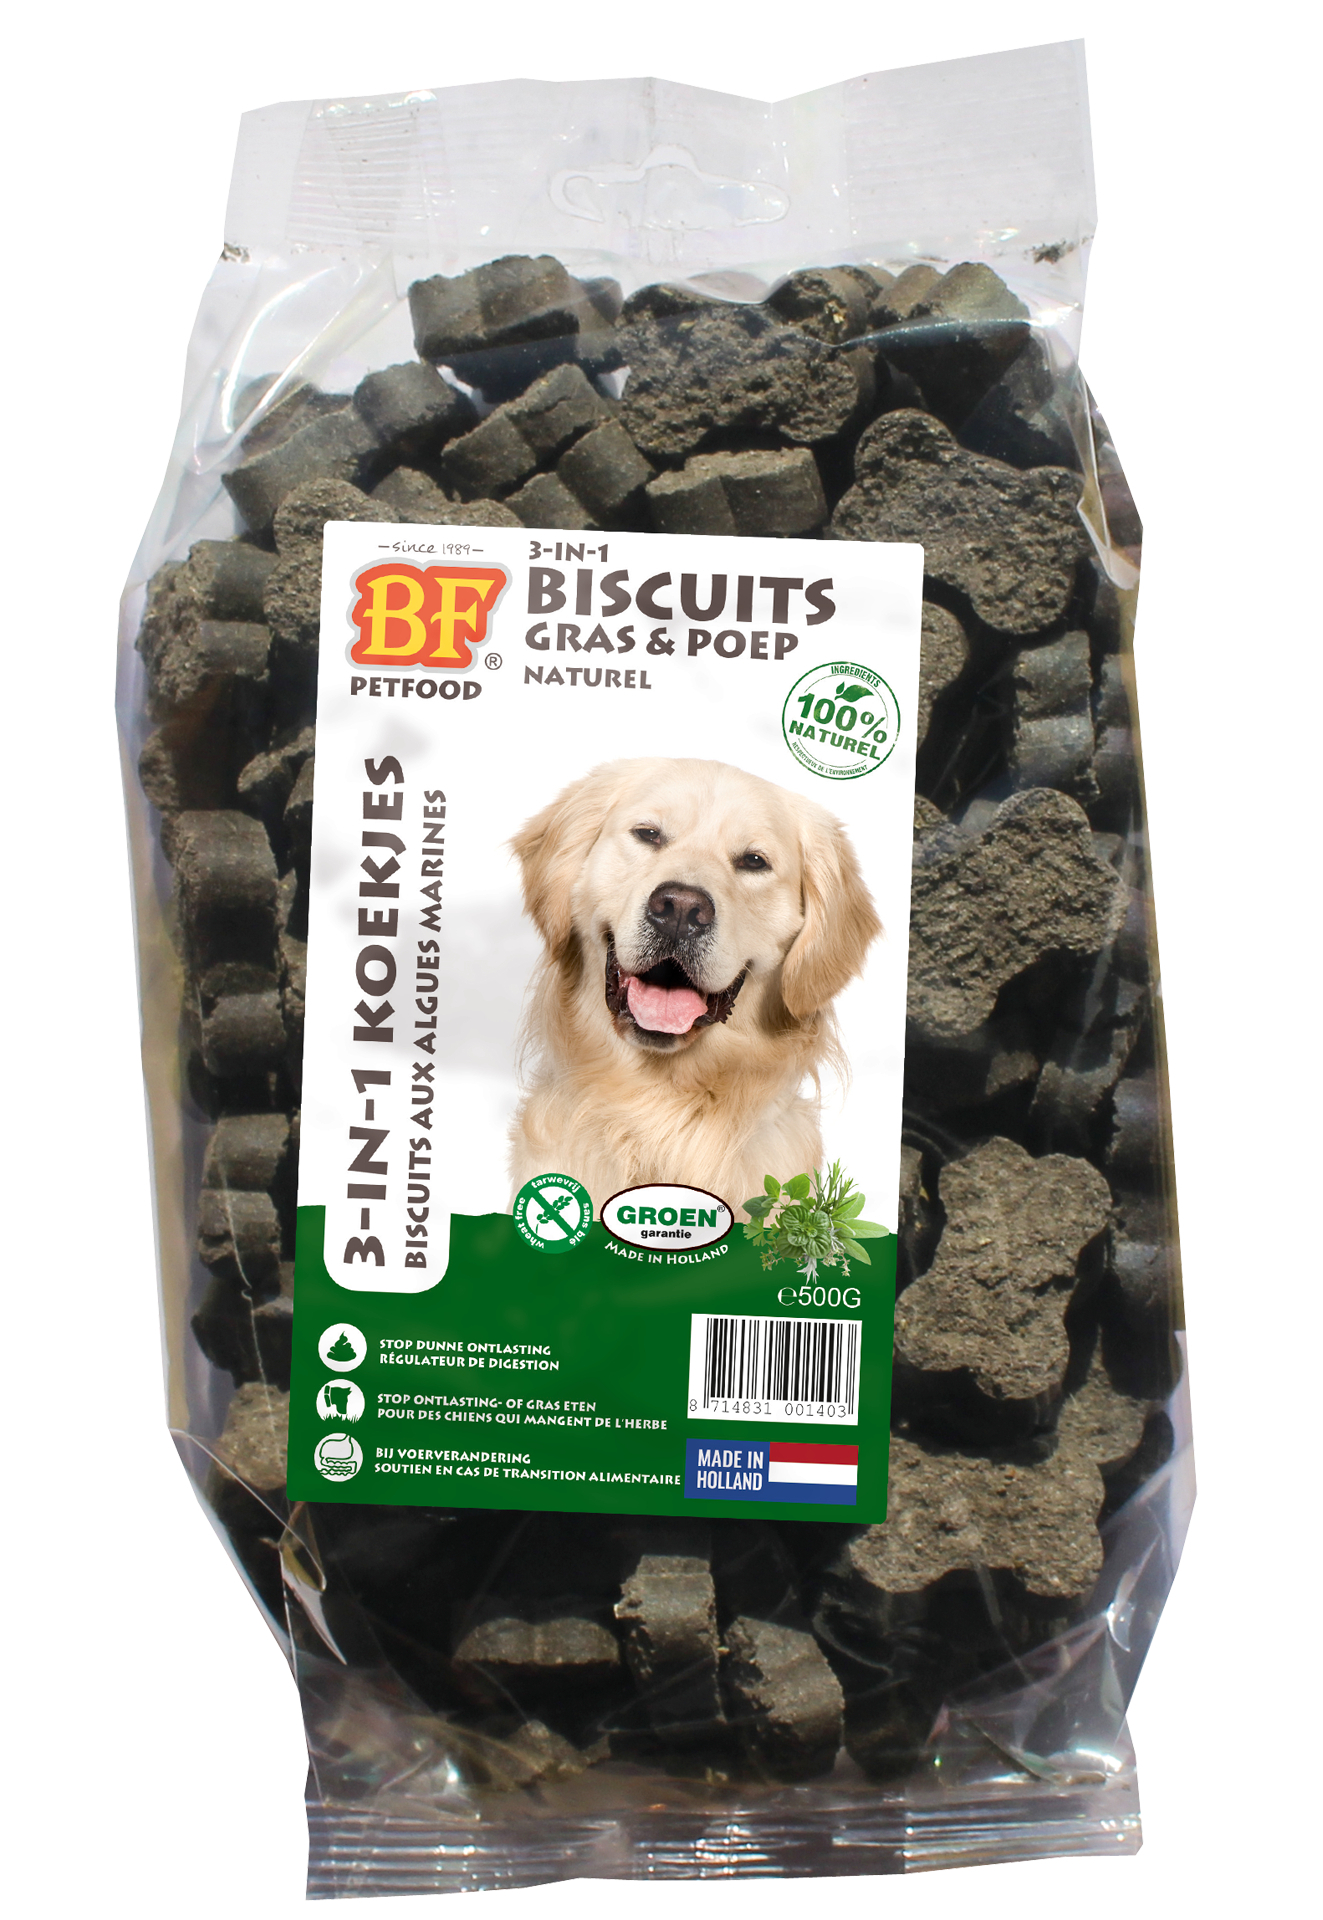 BIOFOOD 3 in 1 koekjes met zeewiersmaak voor honden